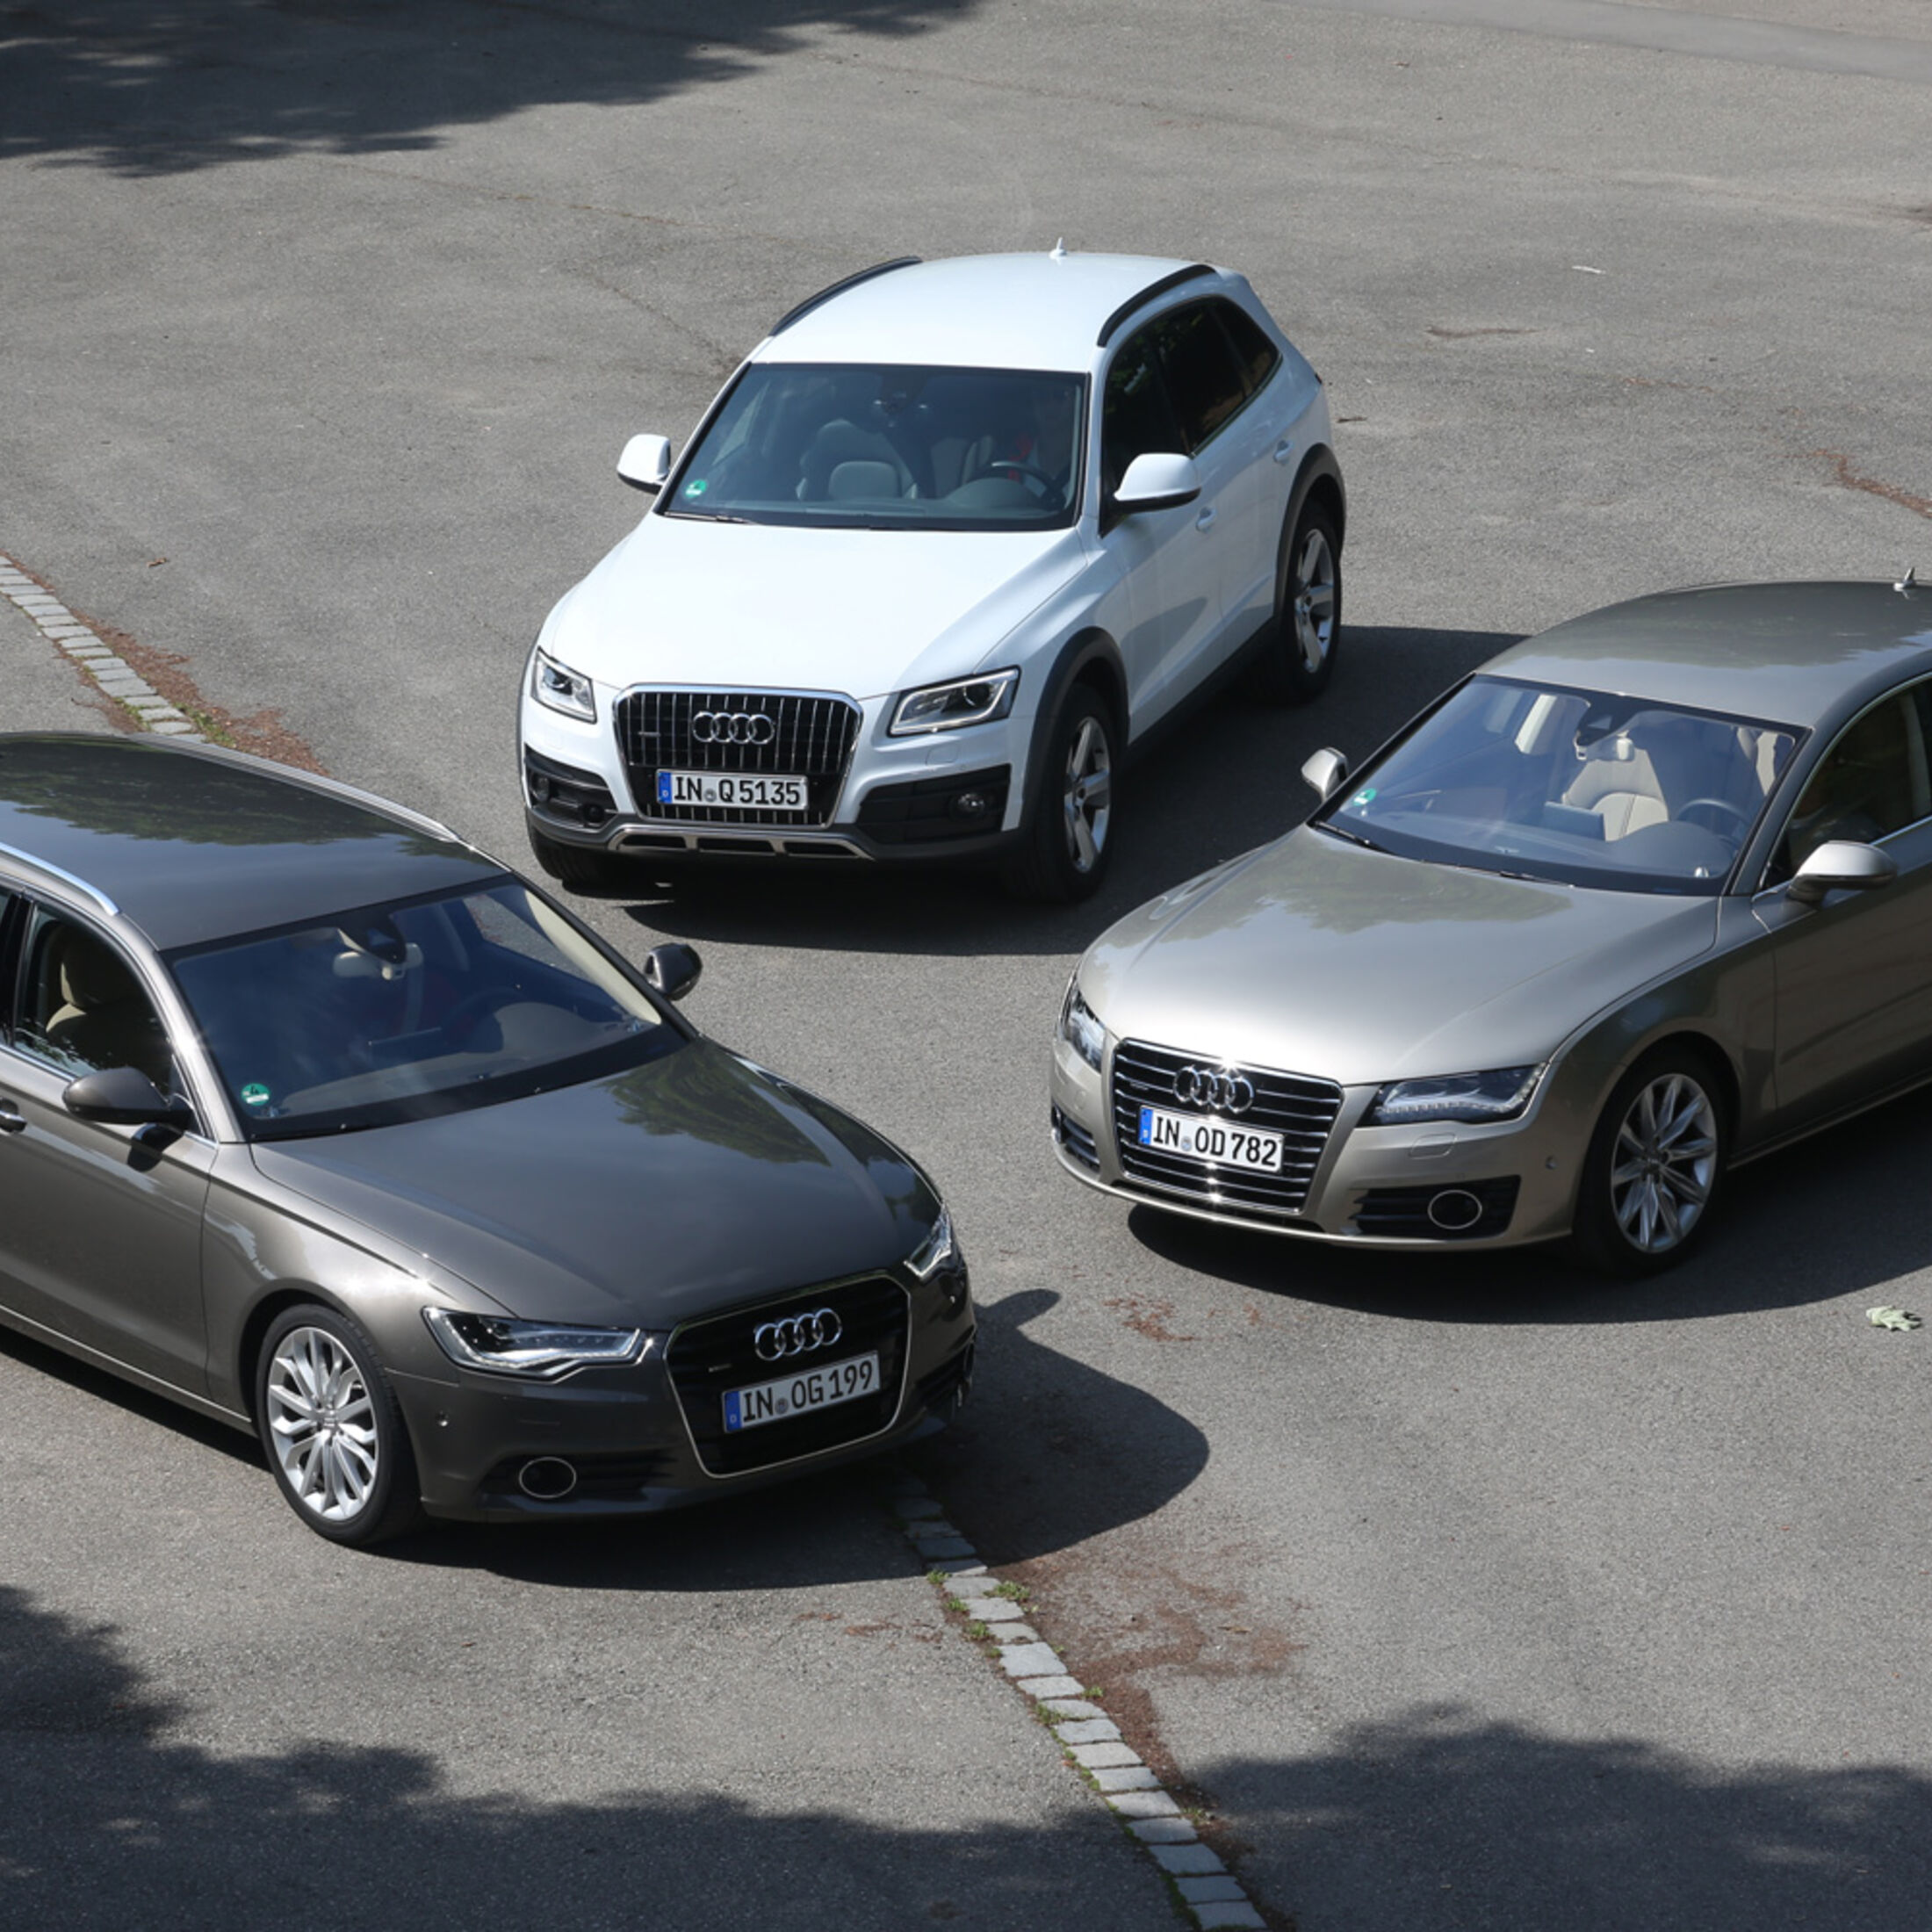 https://imgr1.auto-motor-und-sport.de/Audi-A6-Avant-A7-Q5-Gruppenbild-jsonLd1x1-63cd7e3d-725070.jpg